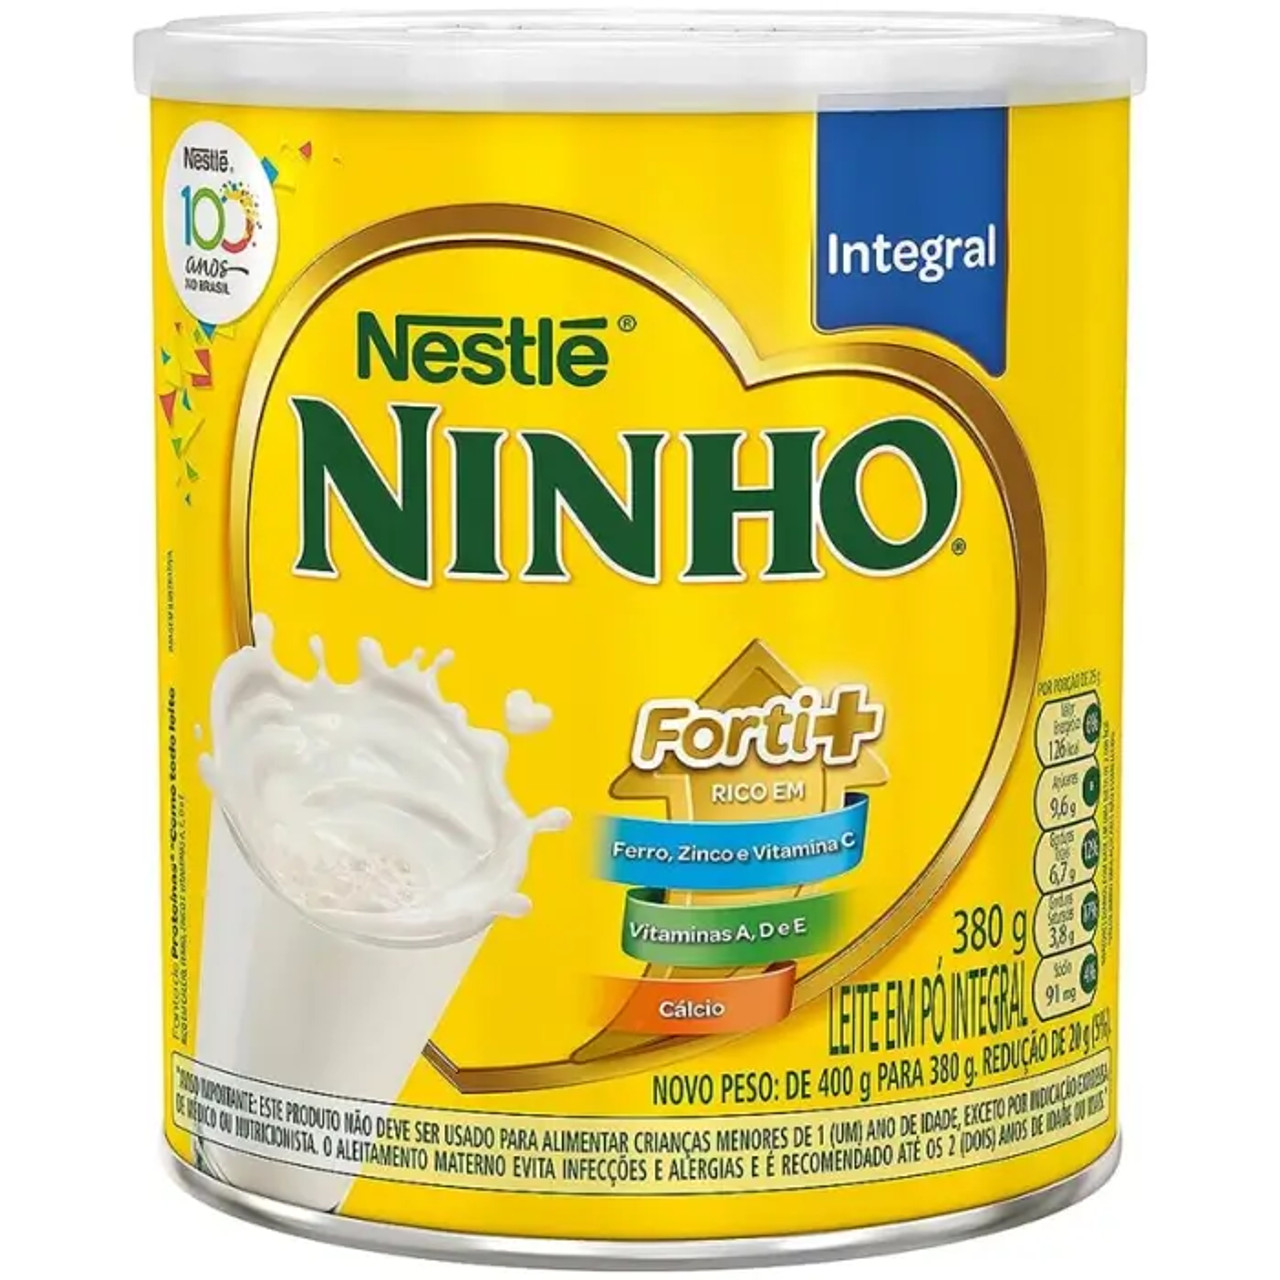 Leite Ninho Integral NESTLÉ / Instant Milk Ninho NESTLÉ (24/Case) 380g - Chicken Pieces